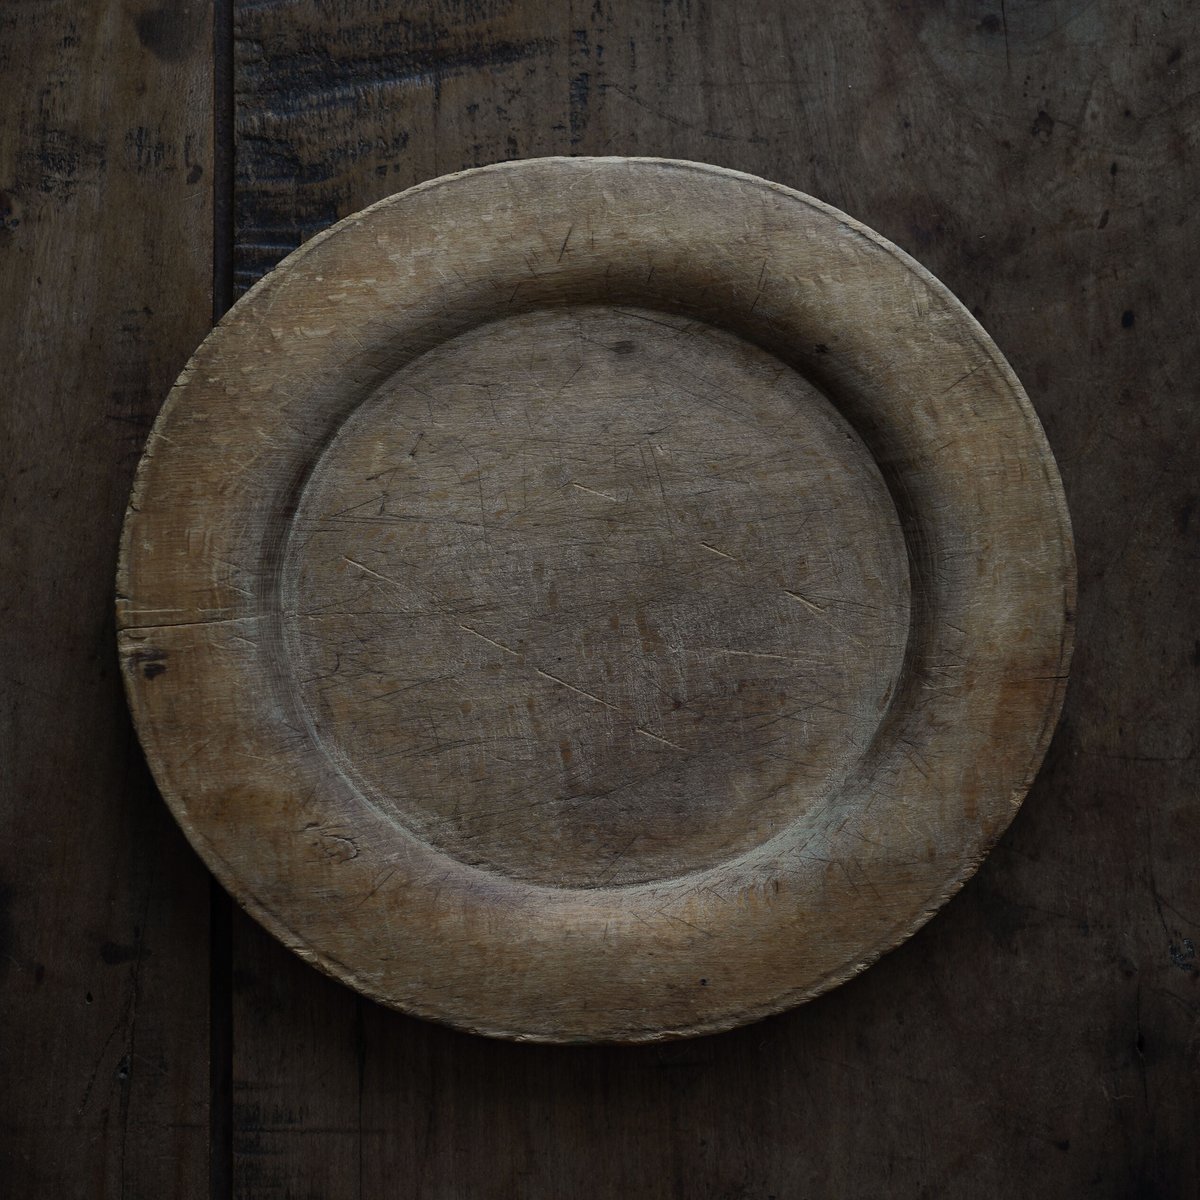 18世紀 スウェーデン木皿 / Swedish Wooden Rim Plate / Sweden 18th C. / b